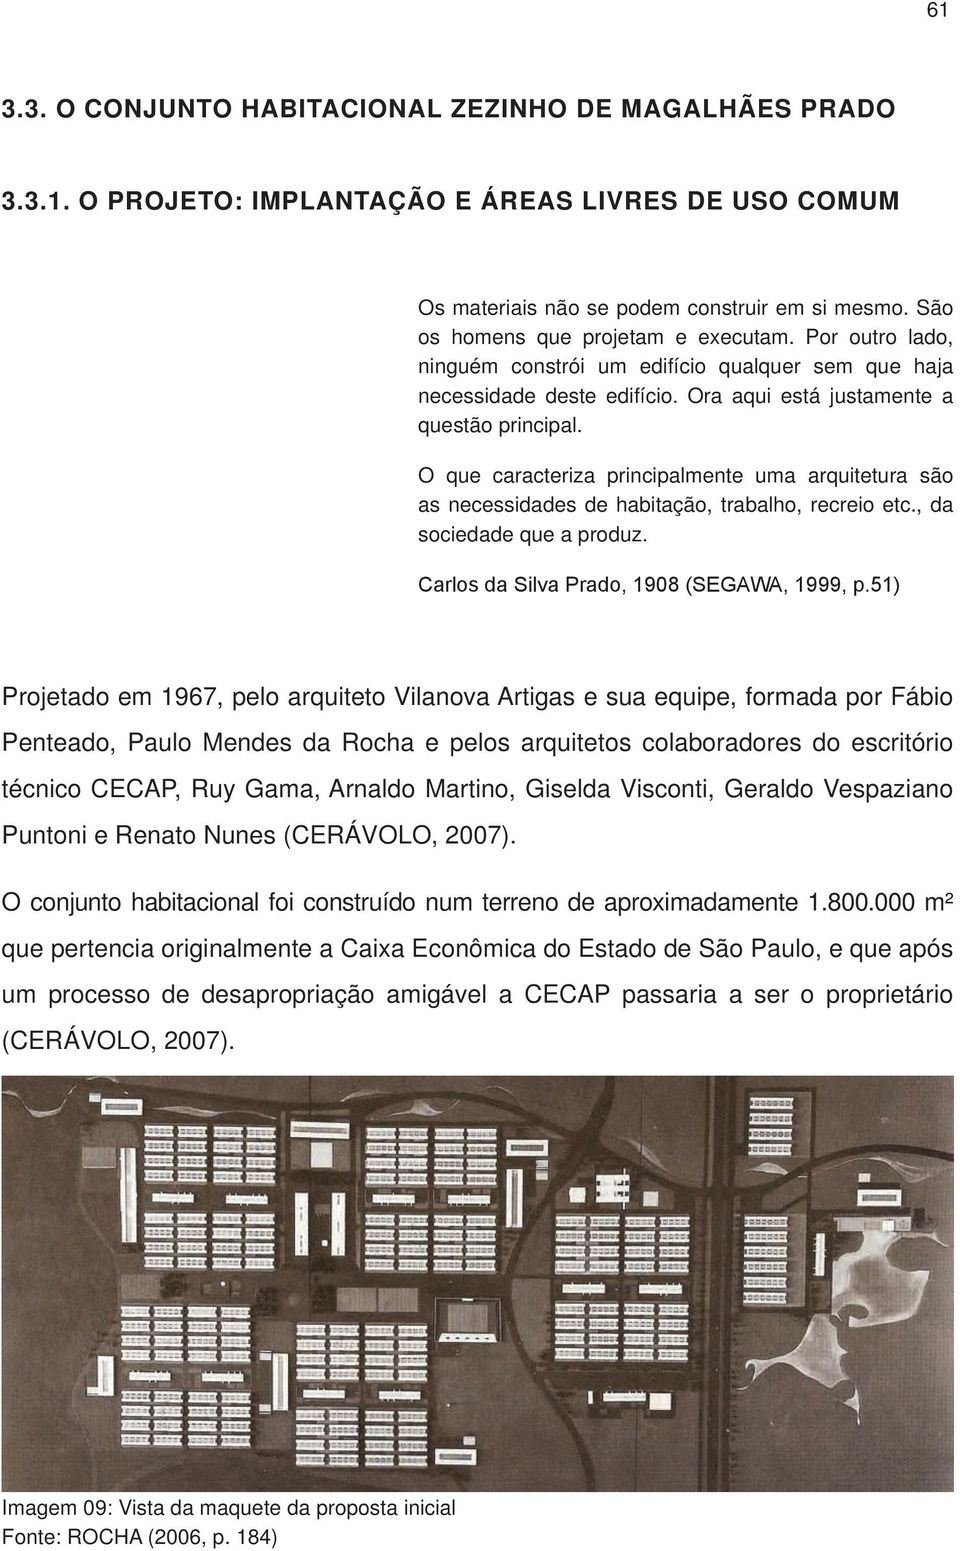 O que caracteriza principalmente uma arquitetura são as necessidades de habitação, trabalho, recreio etc., da sociedade que a produz. Carlos da Silva Prado, 908 (SEGAWA, 999, p.